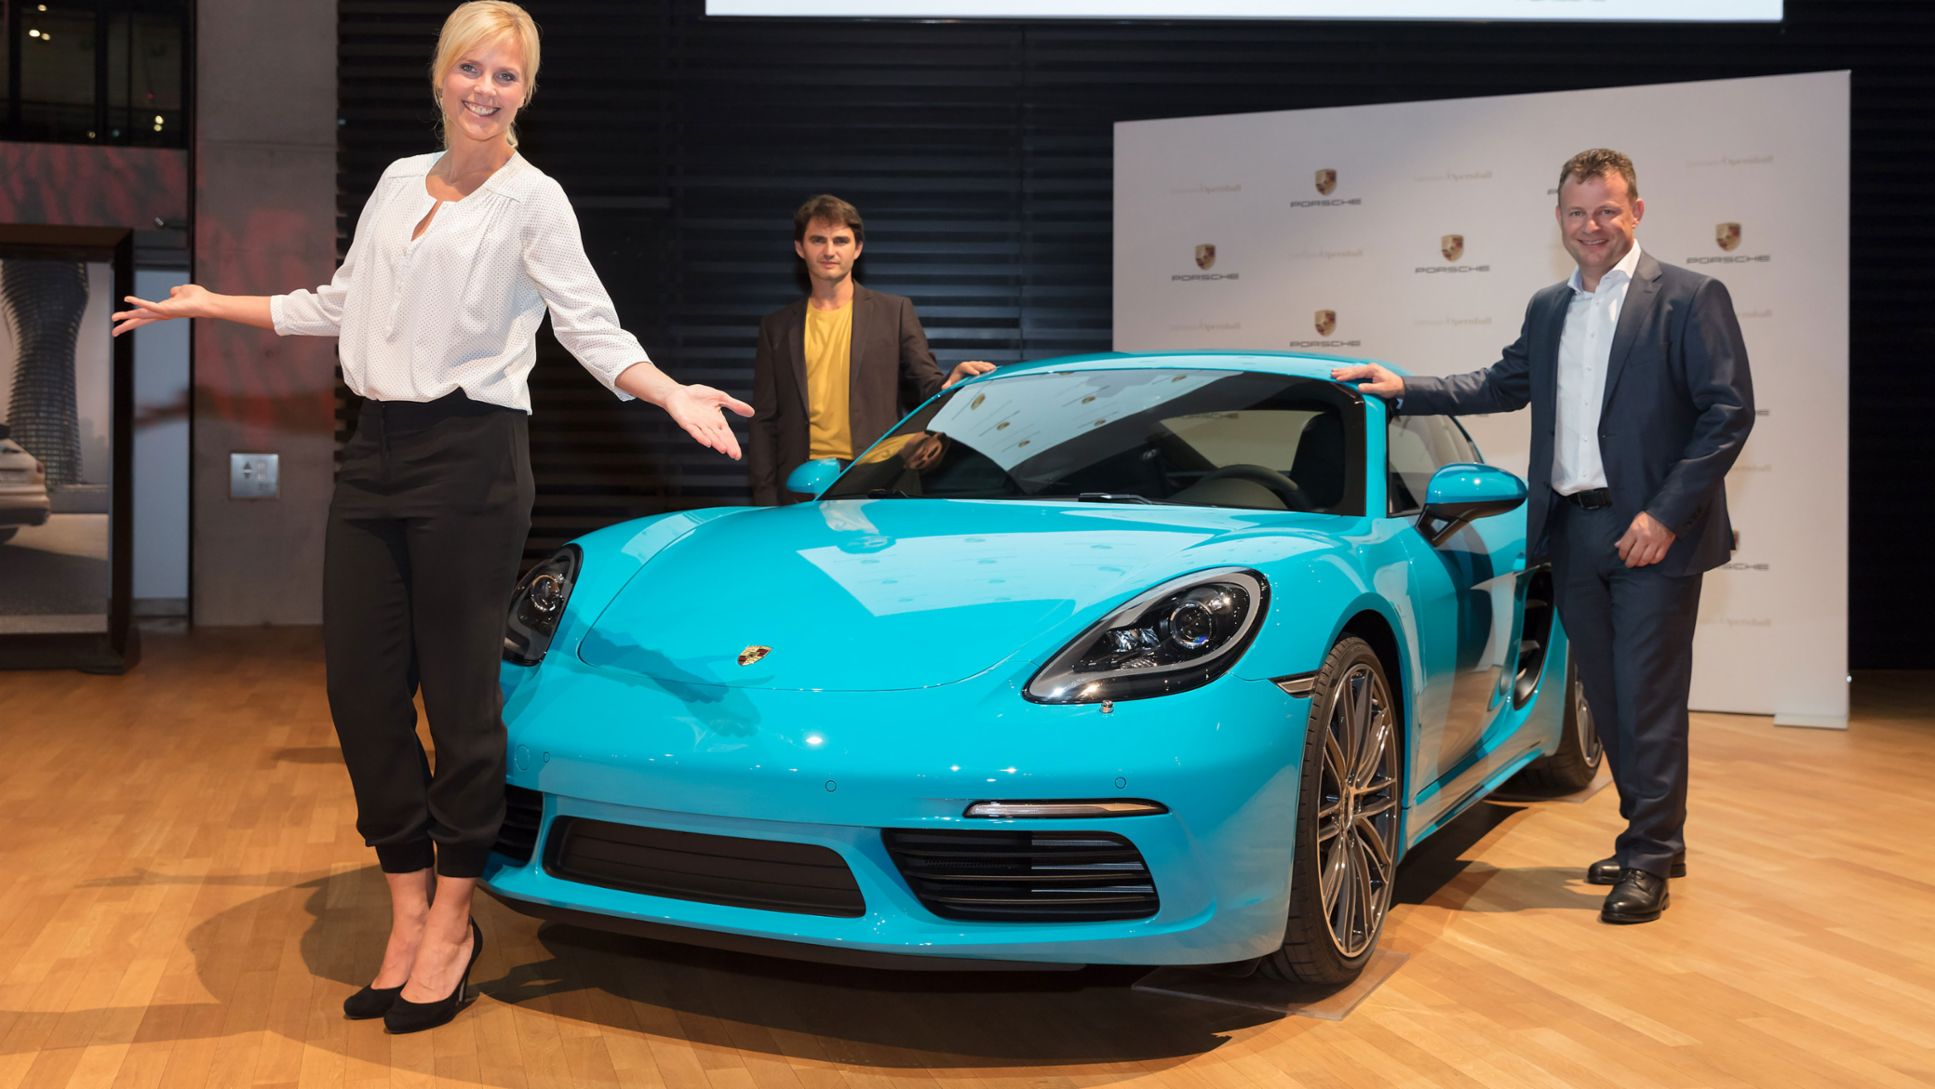 Melanie Marschke, Schauspielerin, Lenn Kudrjawizki, Schauspieler, Gerd Rupp, Vorsitzender der Geschäftsführung von Porsche Leipzig, l-r, 718 Cayman, 2017, Porsche AG